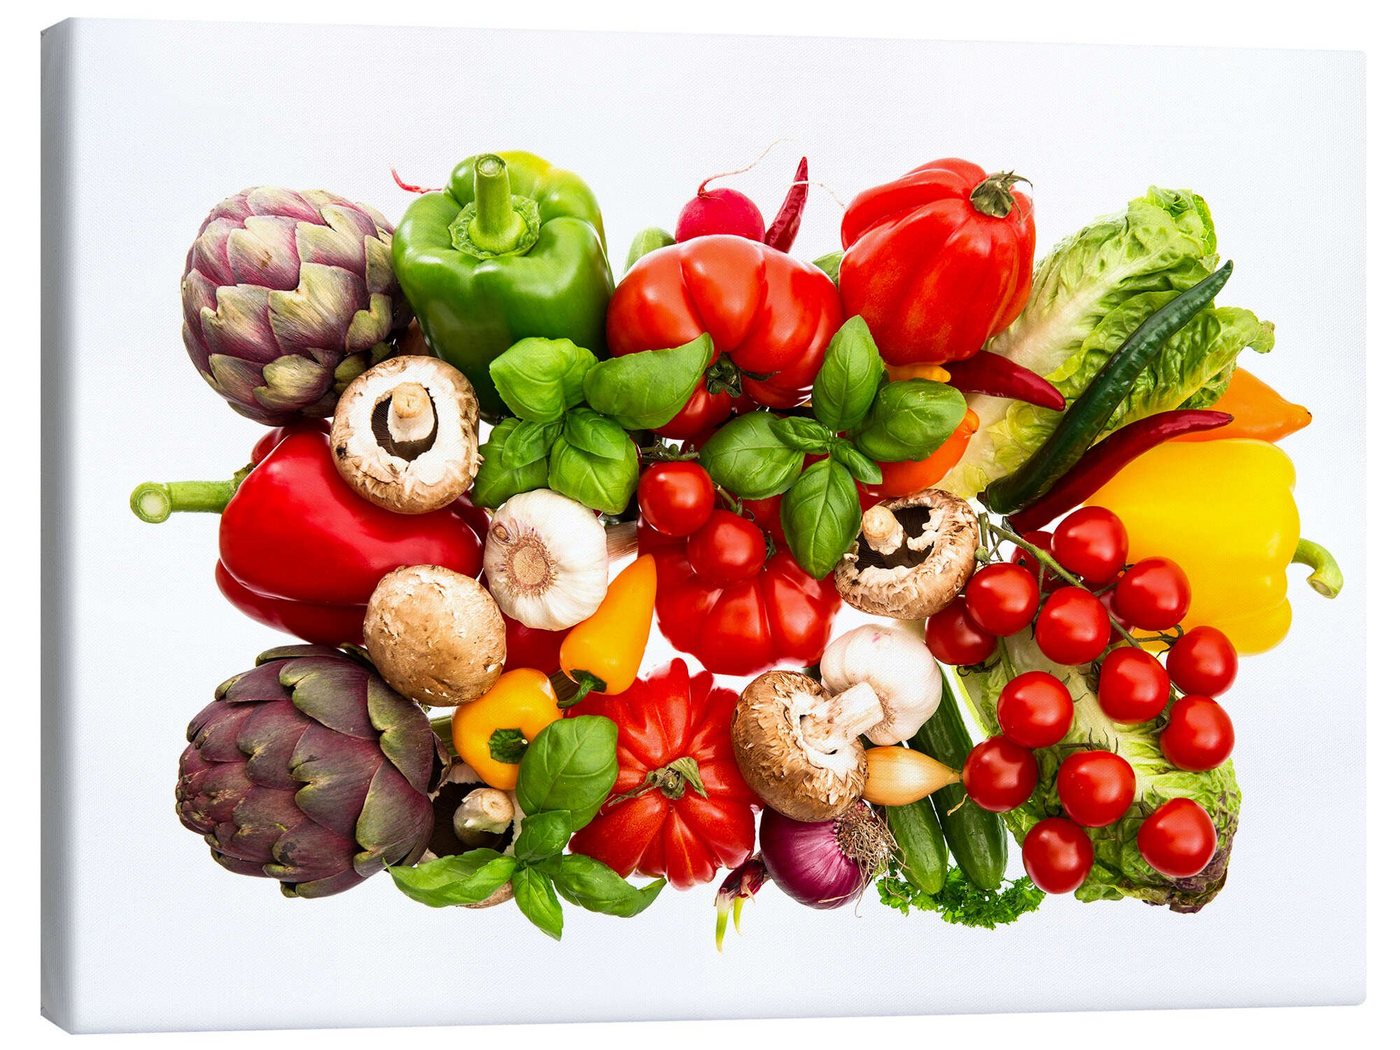 Posterlounge Leinwandbild Editors Choice, frisches Gemüse und Kräuter auf Weiß, Küche Fotografie von Posterlounge